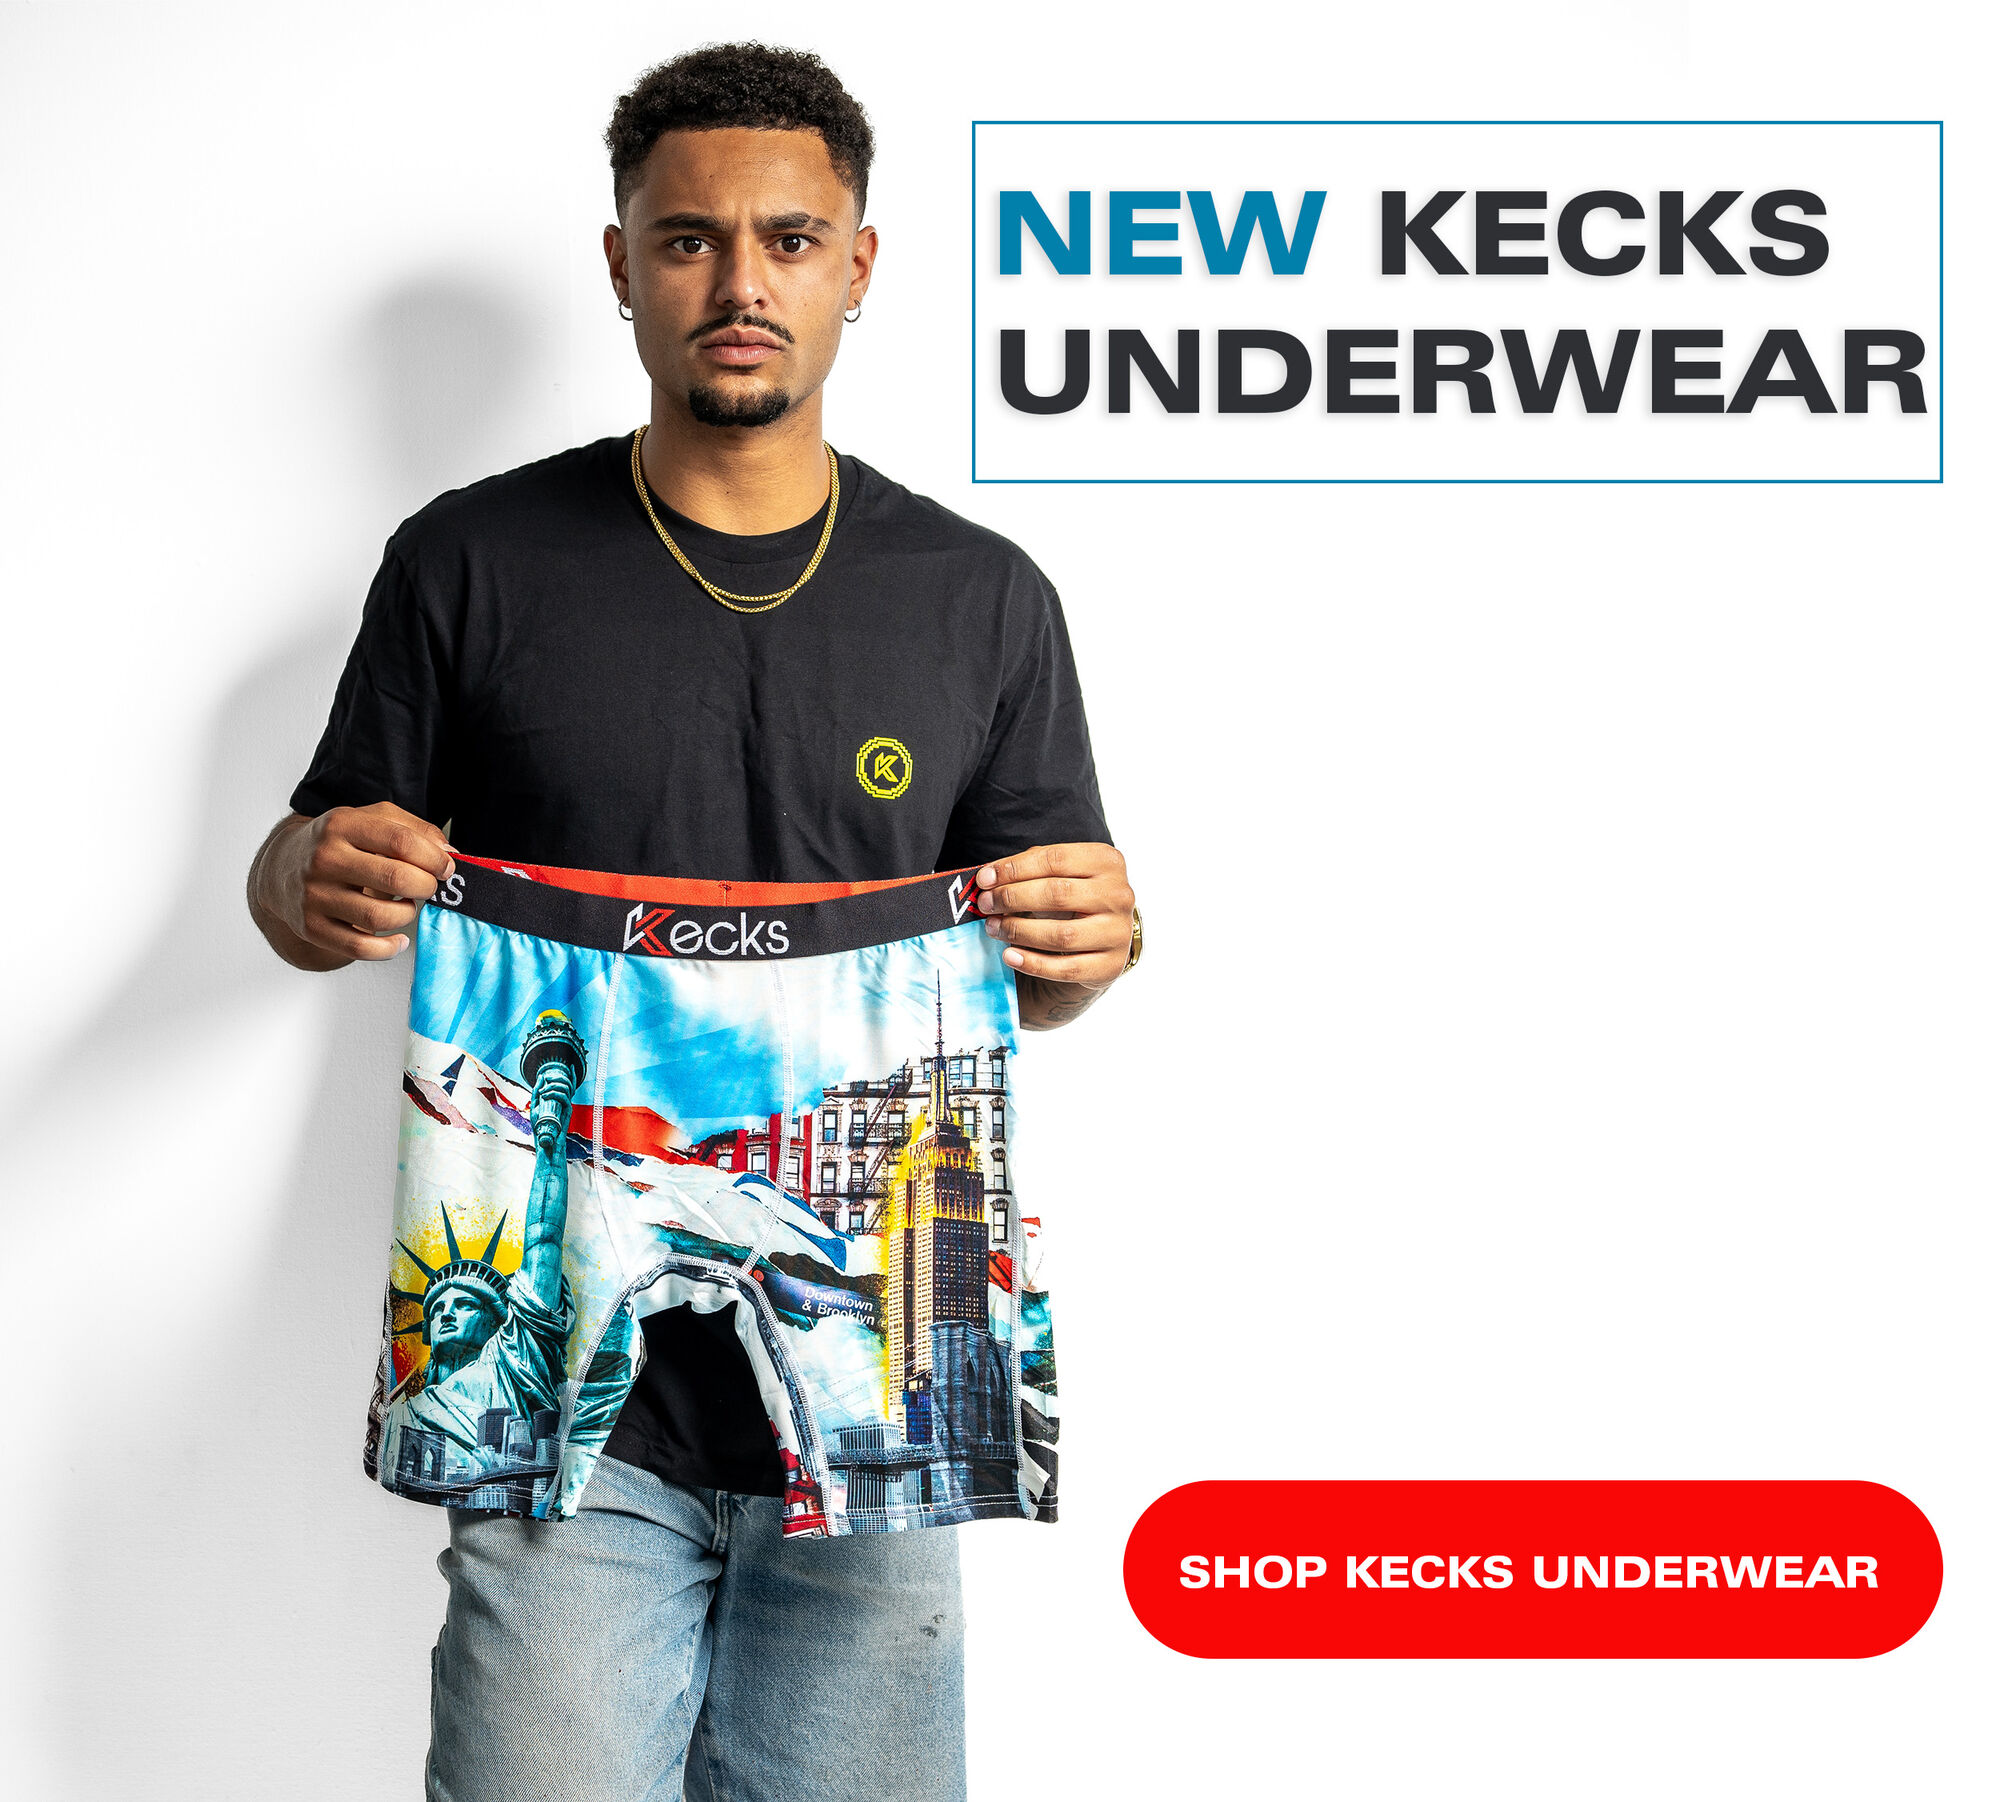 Kecks Underwear Save the Queen